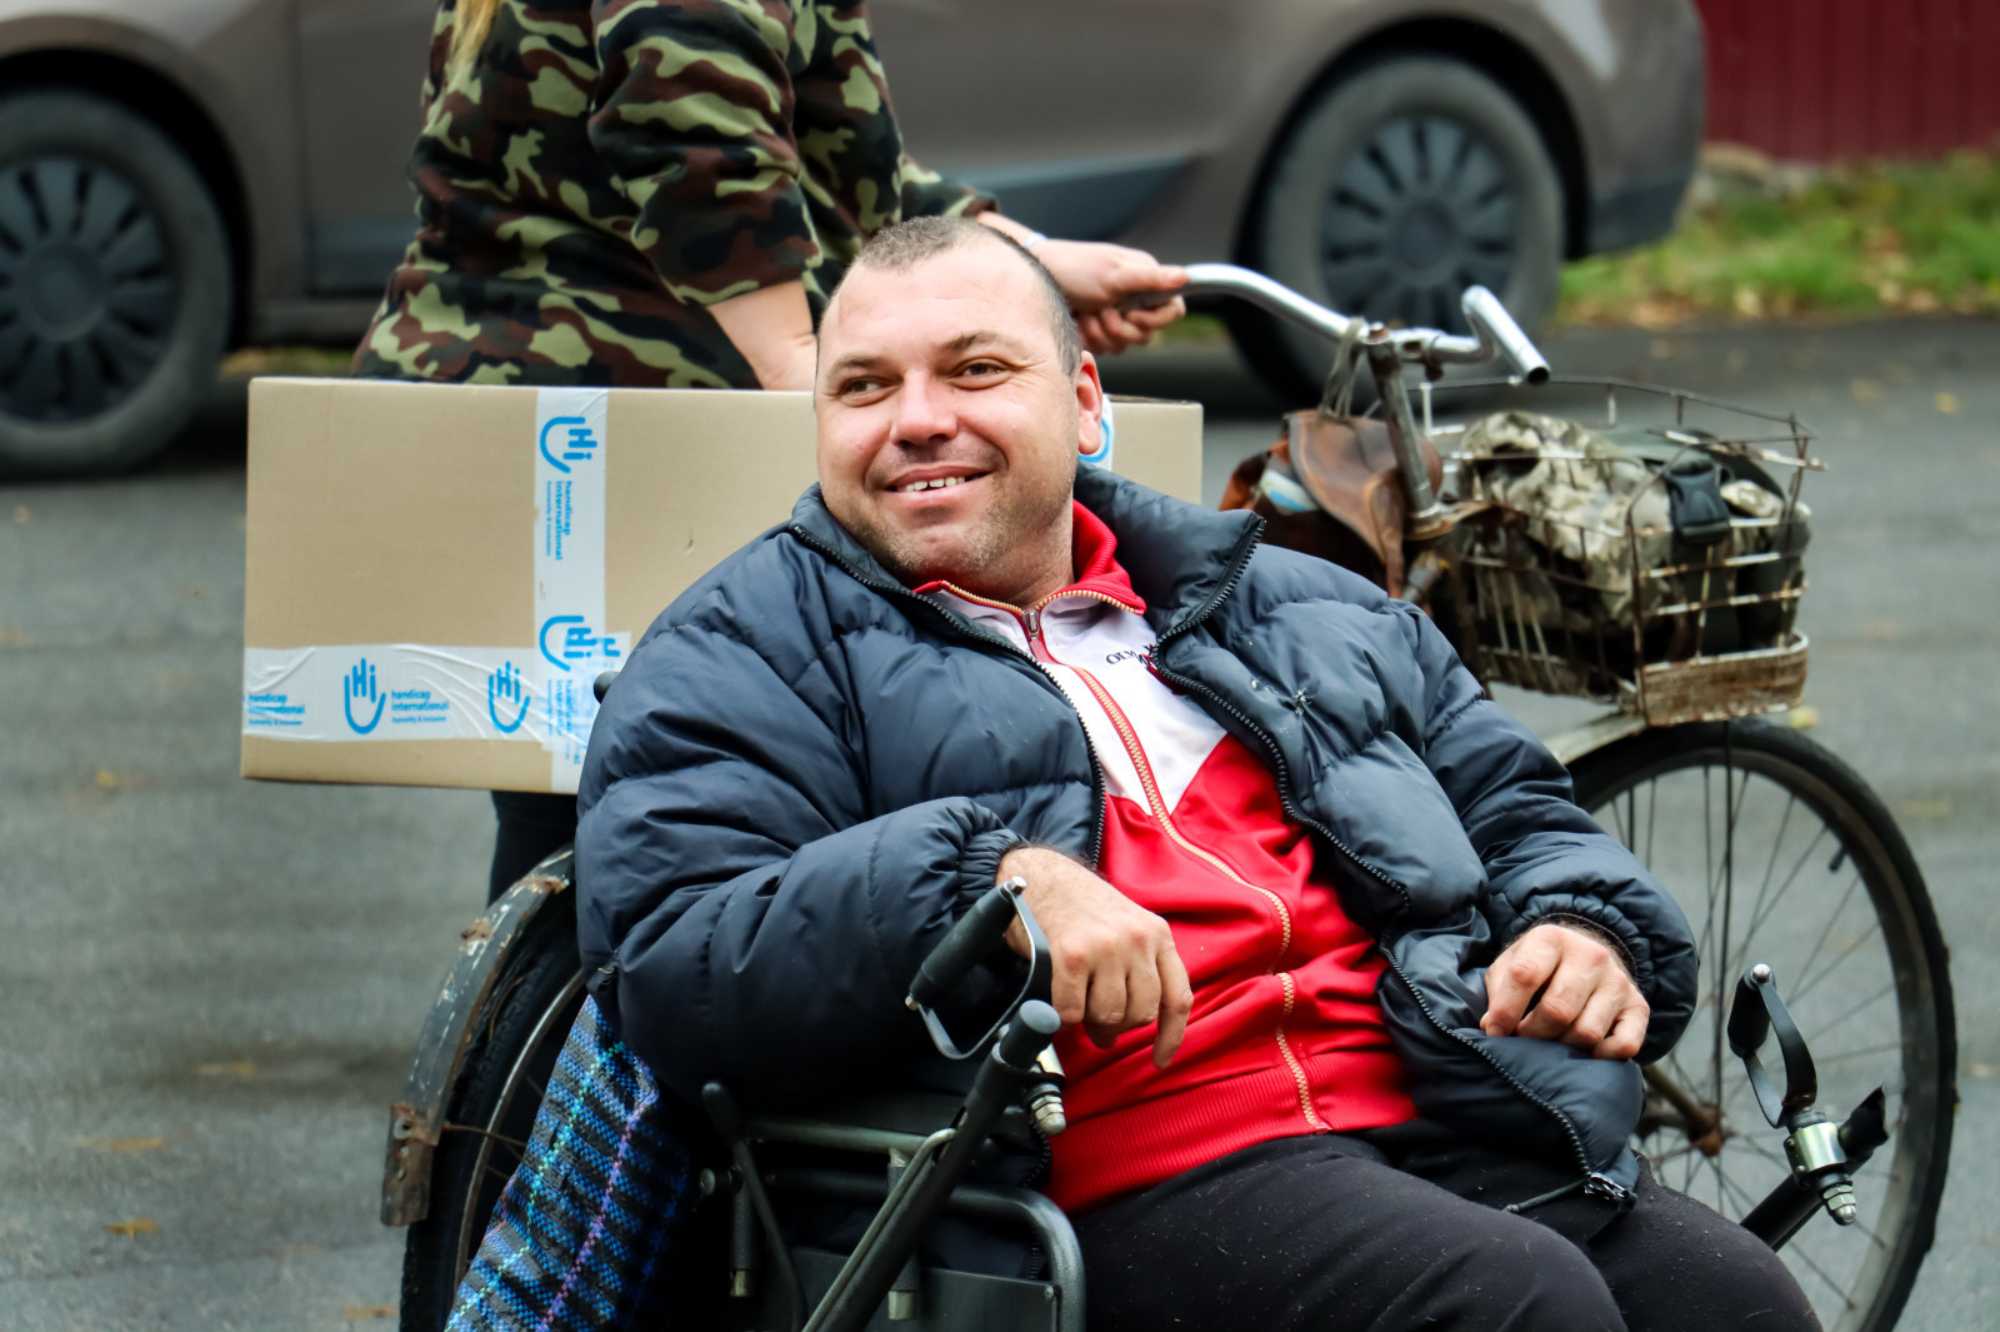 Ein Mann sitzt in seinem Rollstuhl und lacht. Im Hintergrund ist ein Hilfspaket von HI, das auf einem Fahrrad weggeschoben wird.